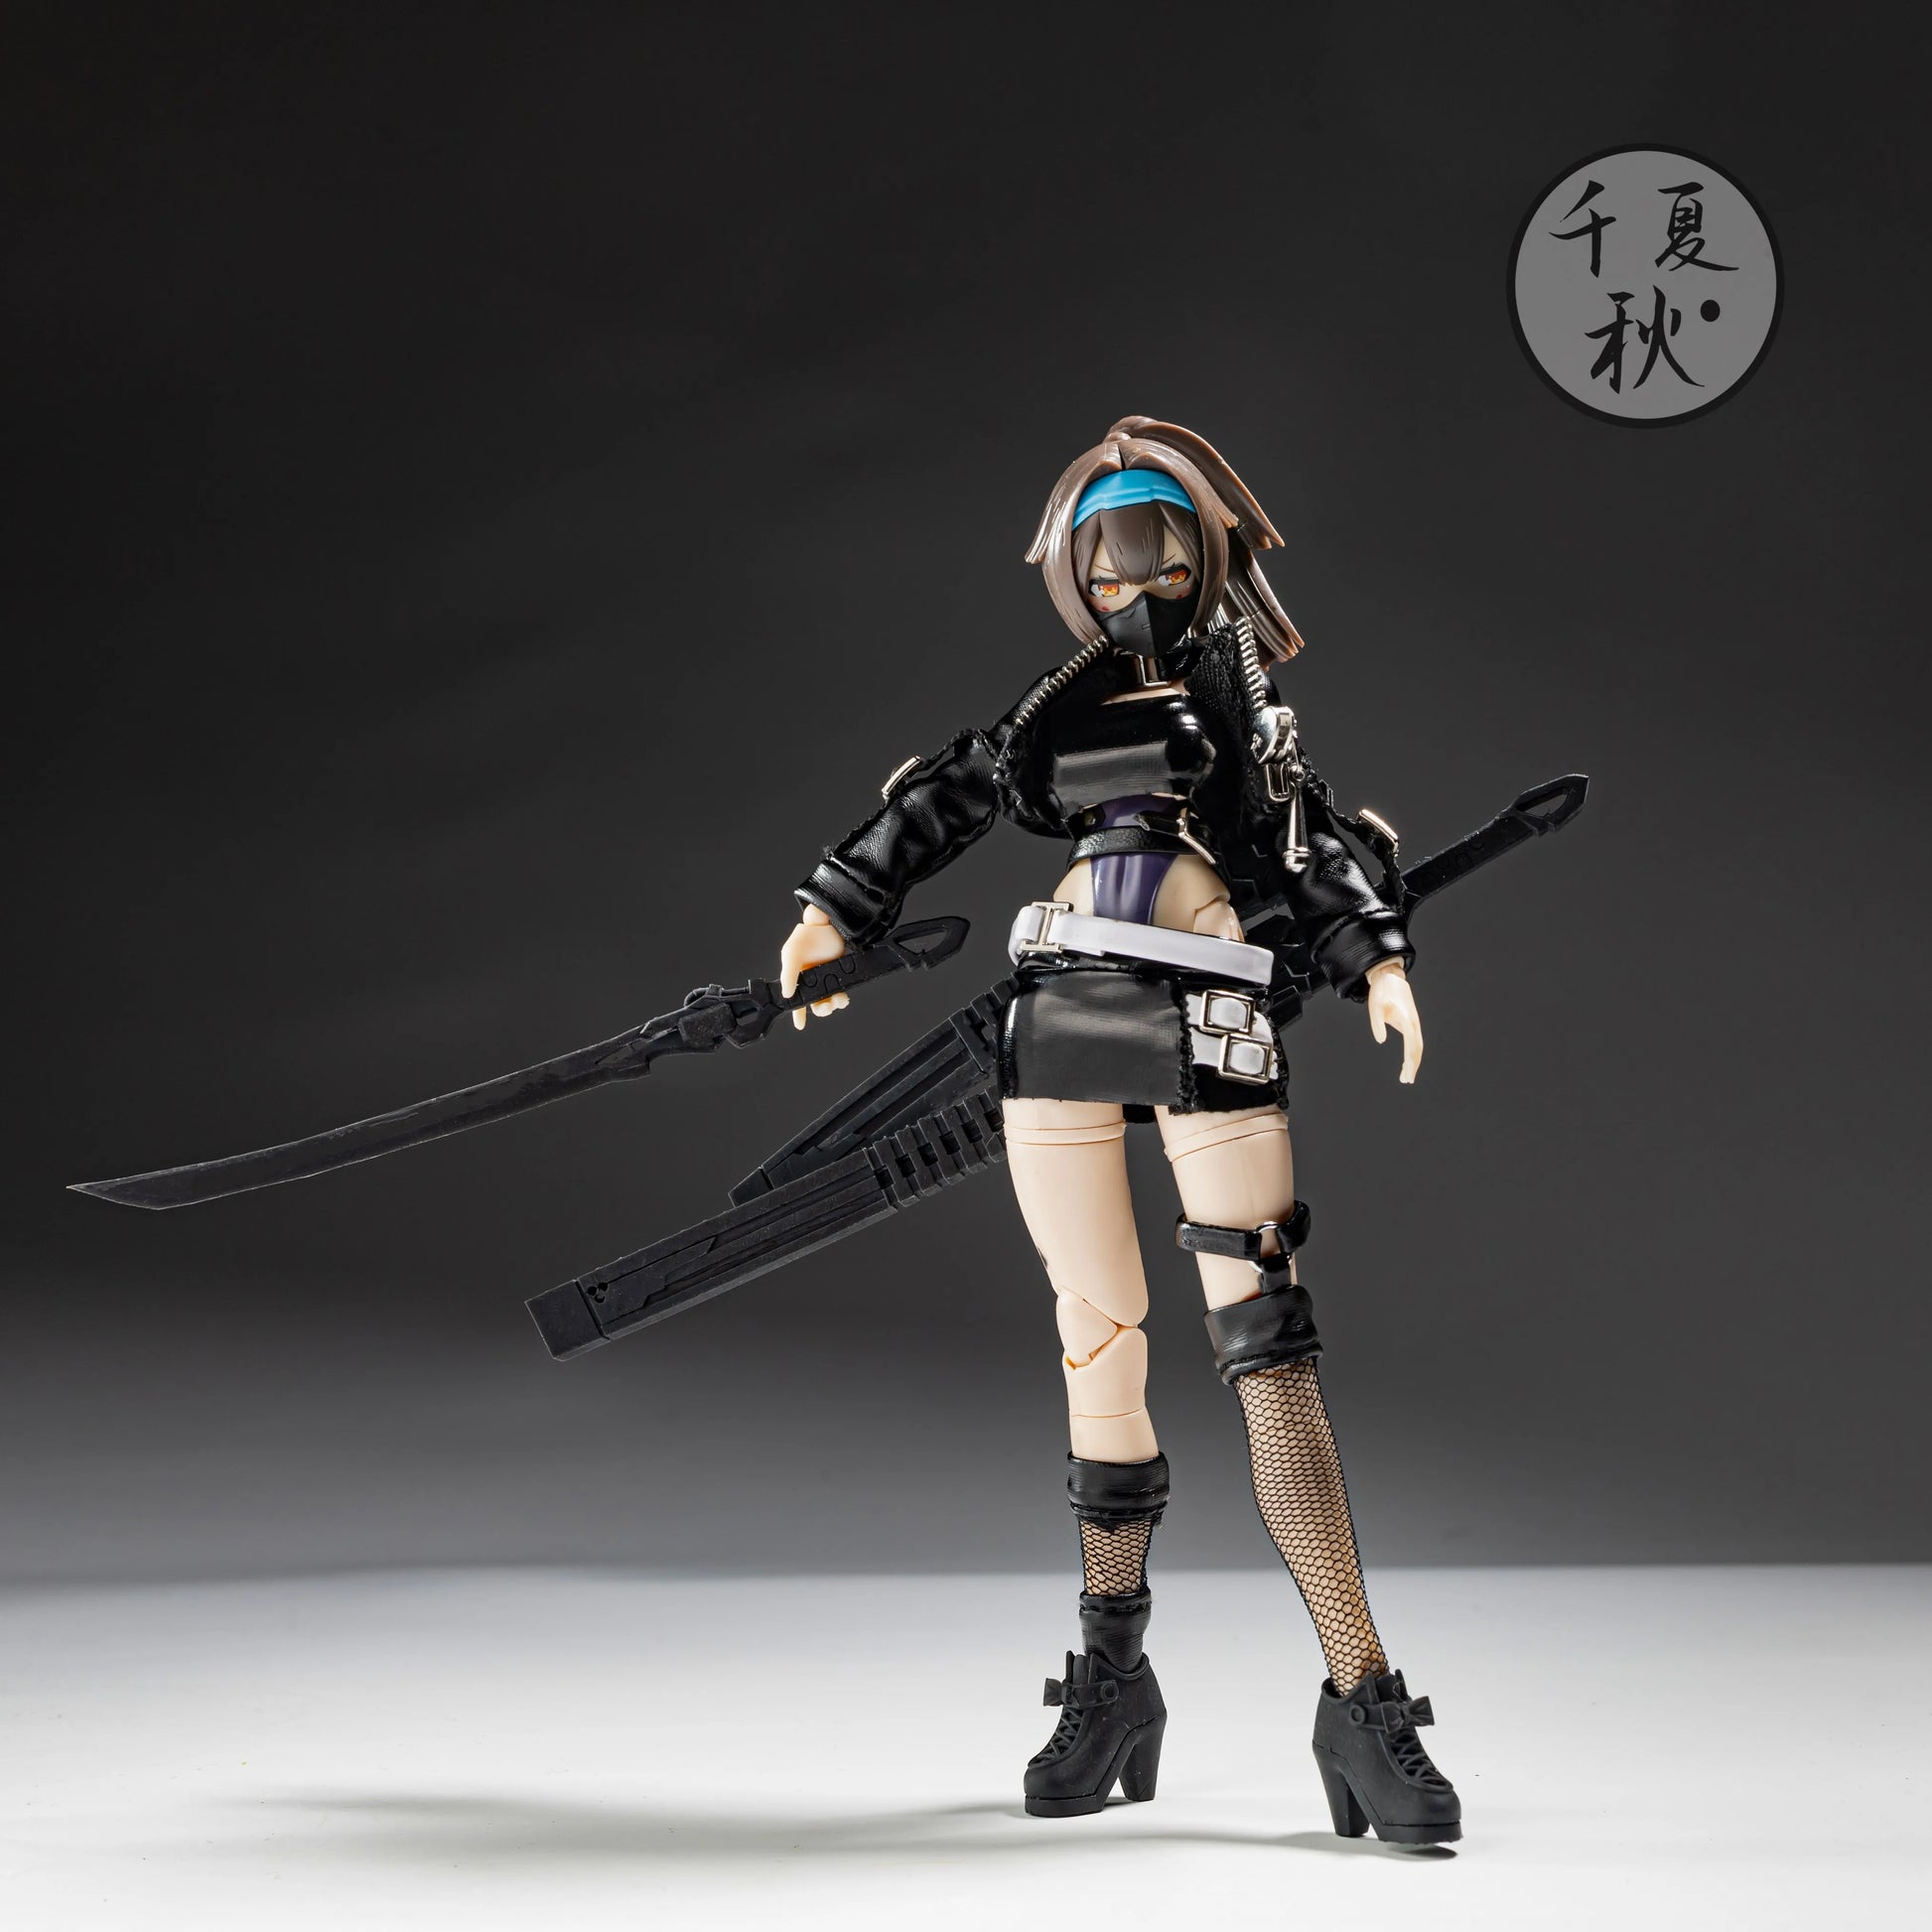 Anime Mobile Suit Girl Action Figure Elite Swordsman Accessory Set